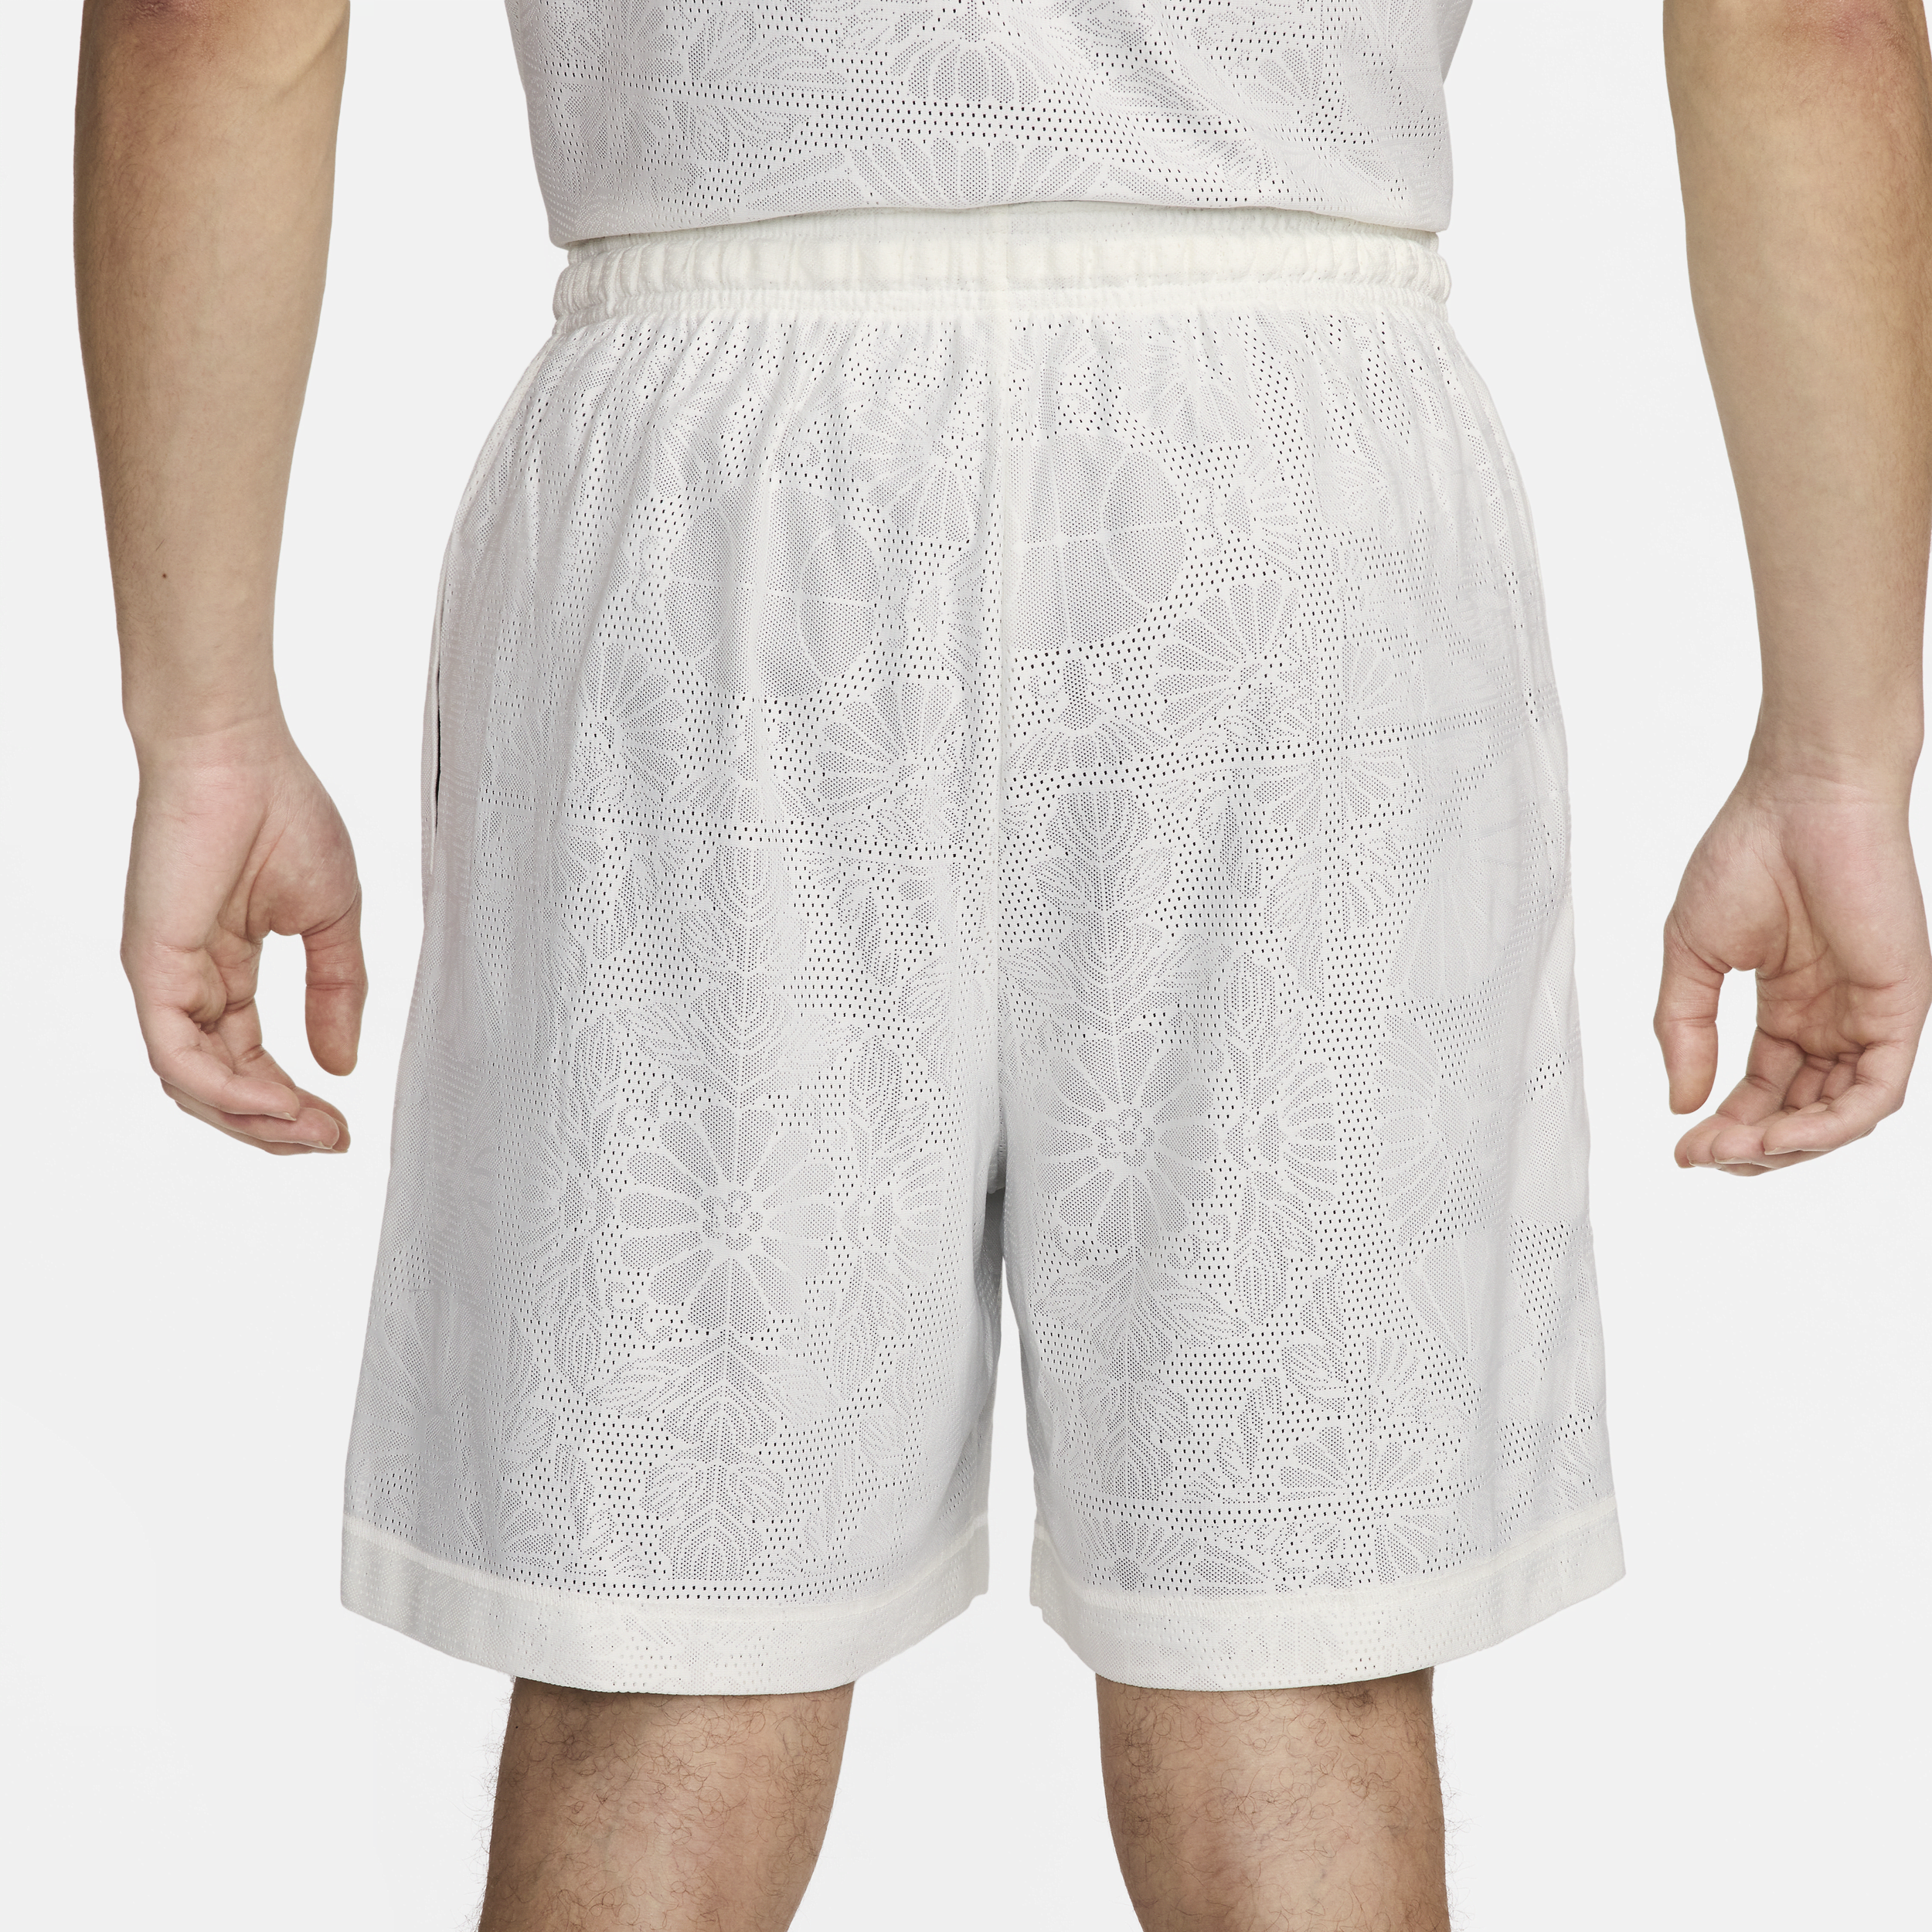 Nike Standard Issue omkeerbare basketbalshorts met Dri-FIT voor heren (15 cm) Wit